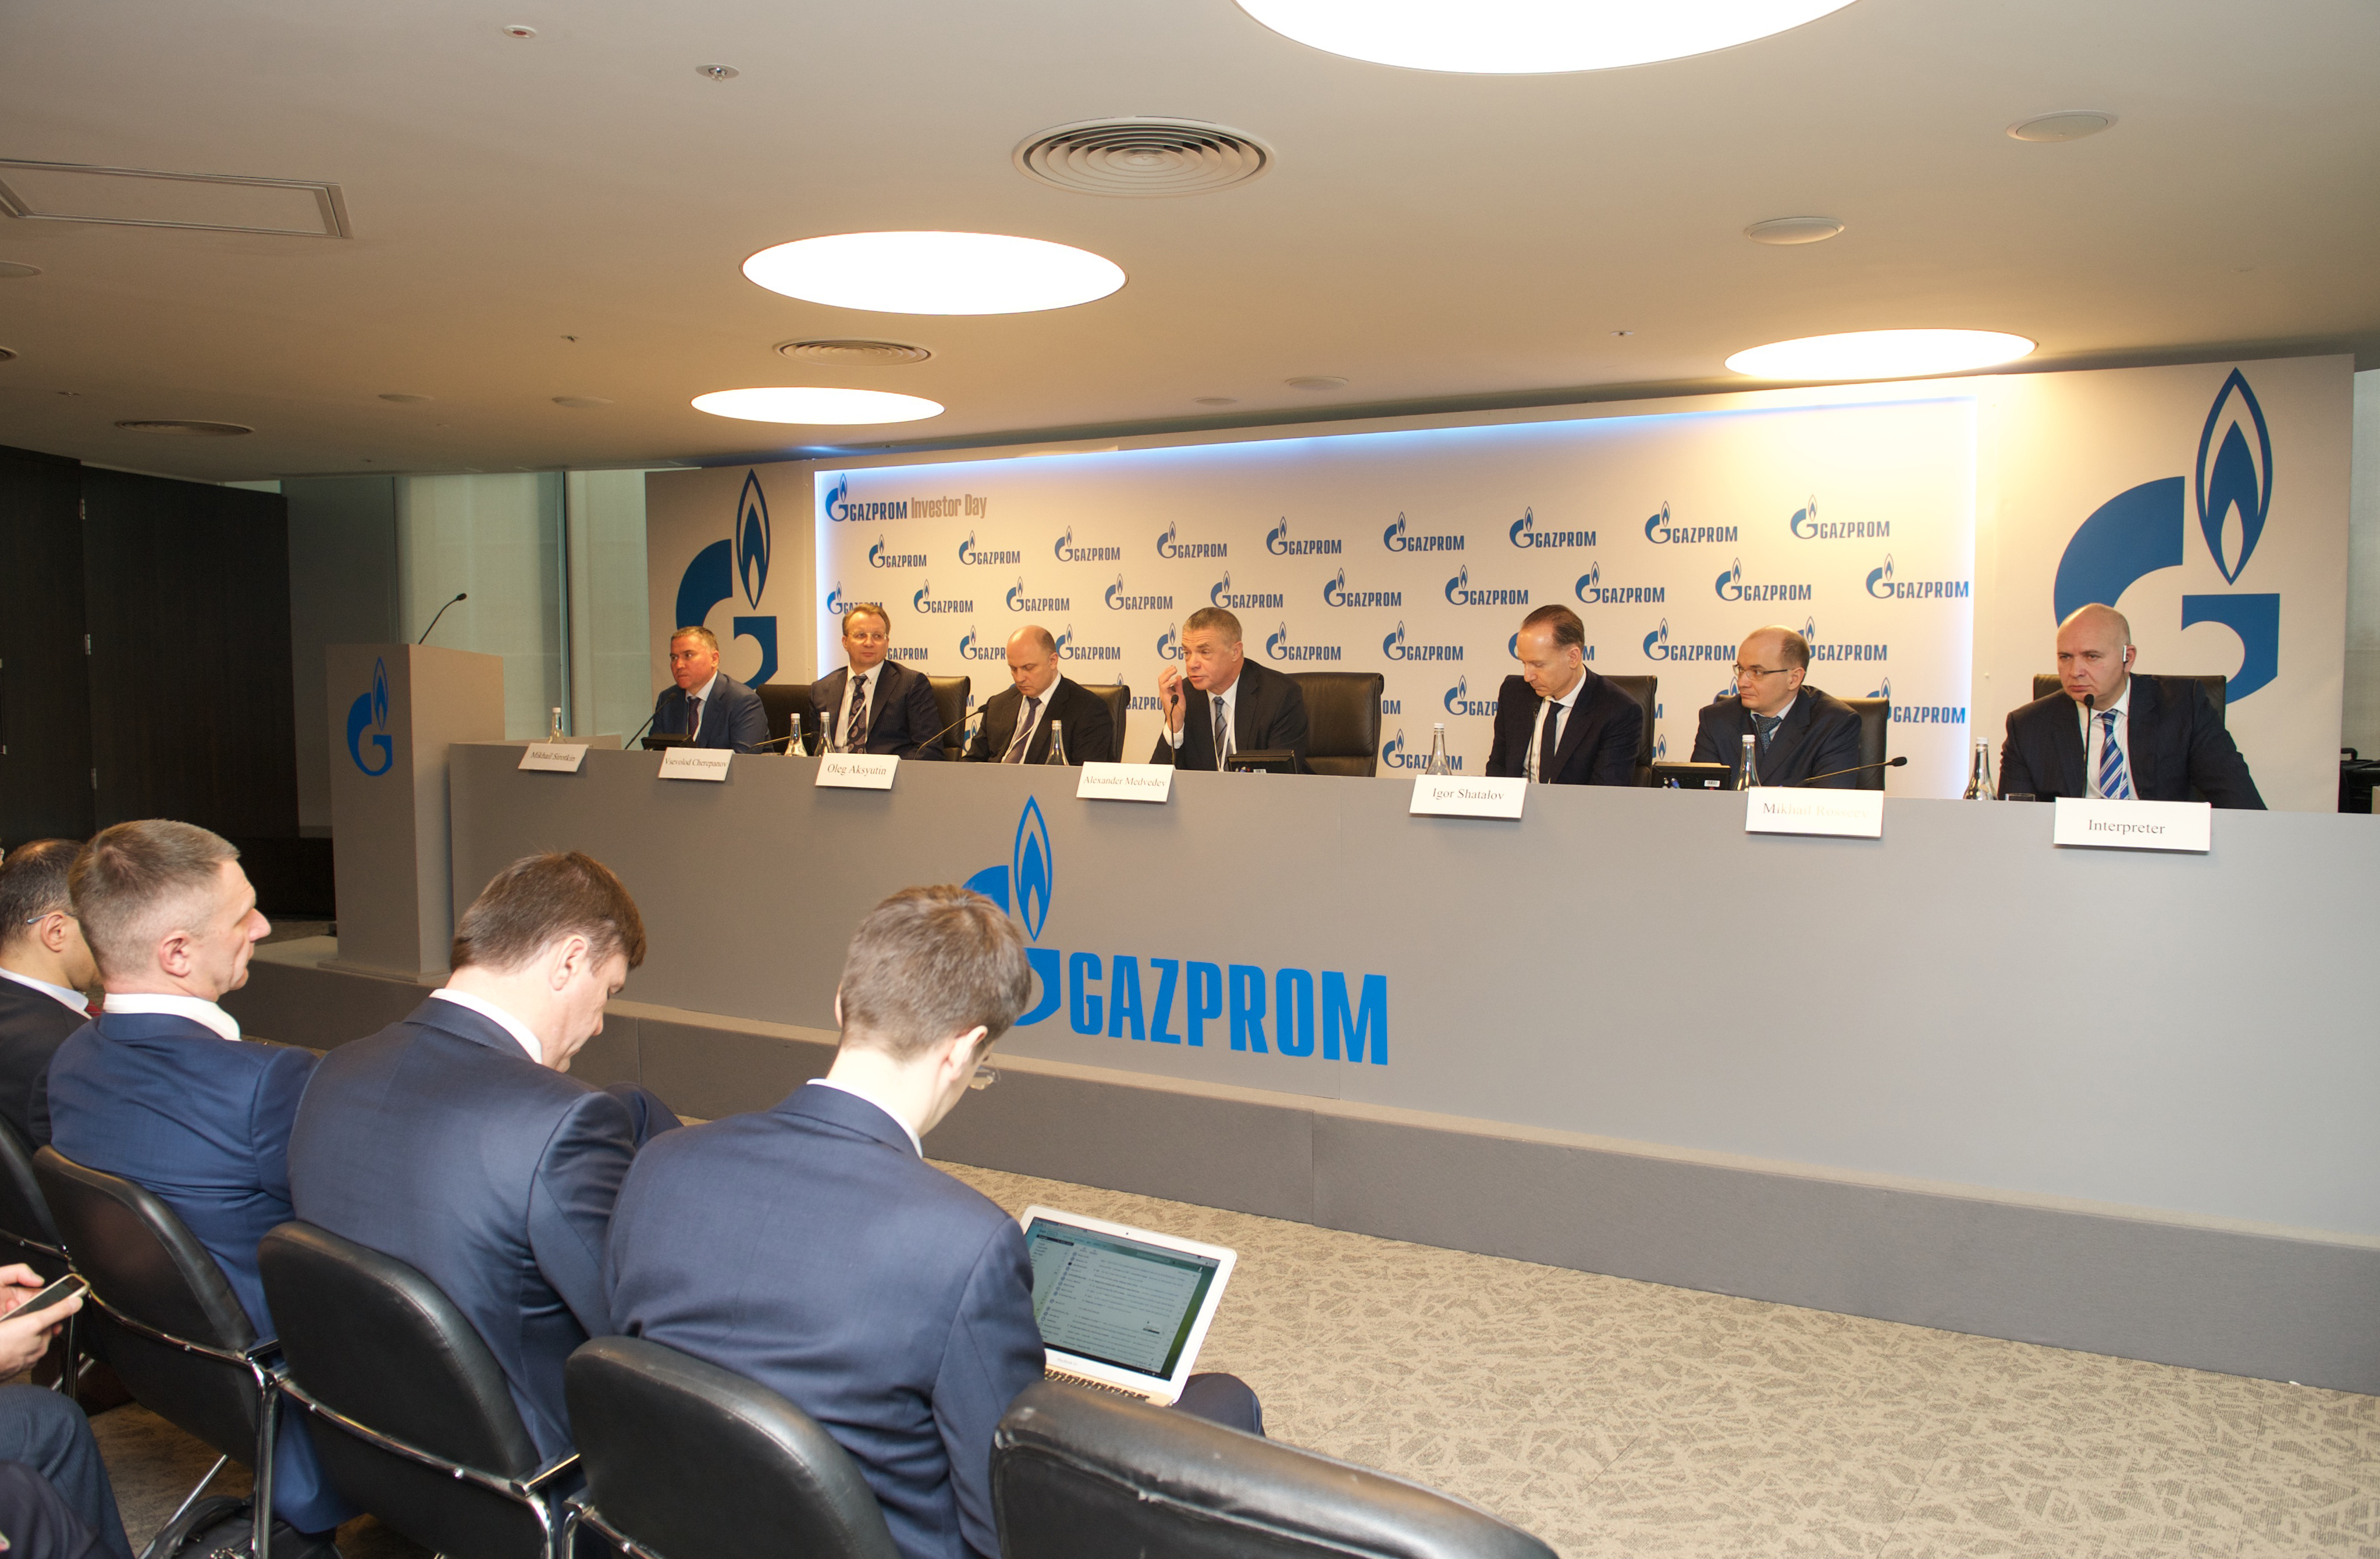 Gazprom informiert über Ölpreise und Gaspreise auf den Investorentagen in New York und London im Februar 2016.